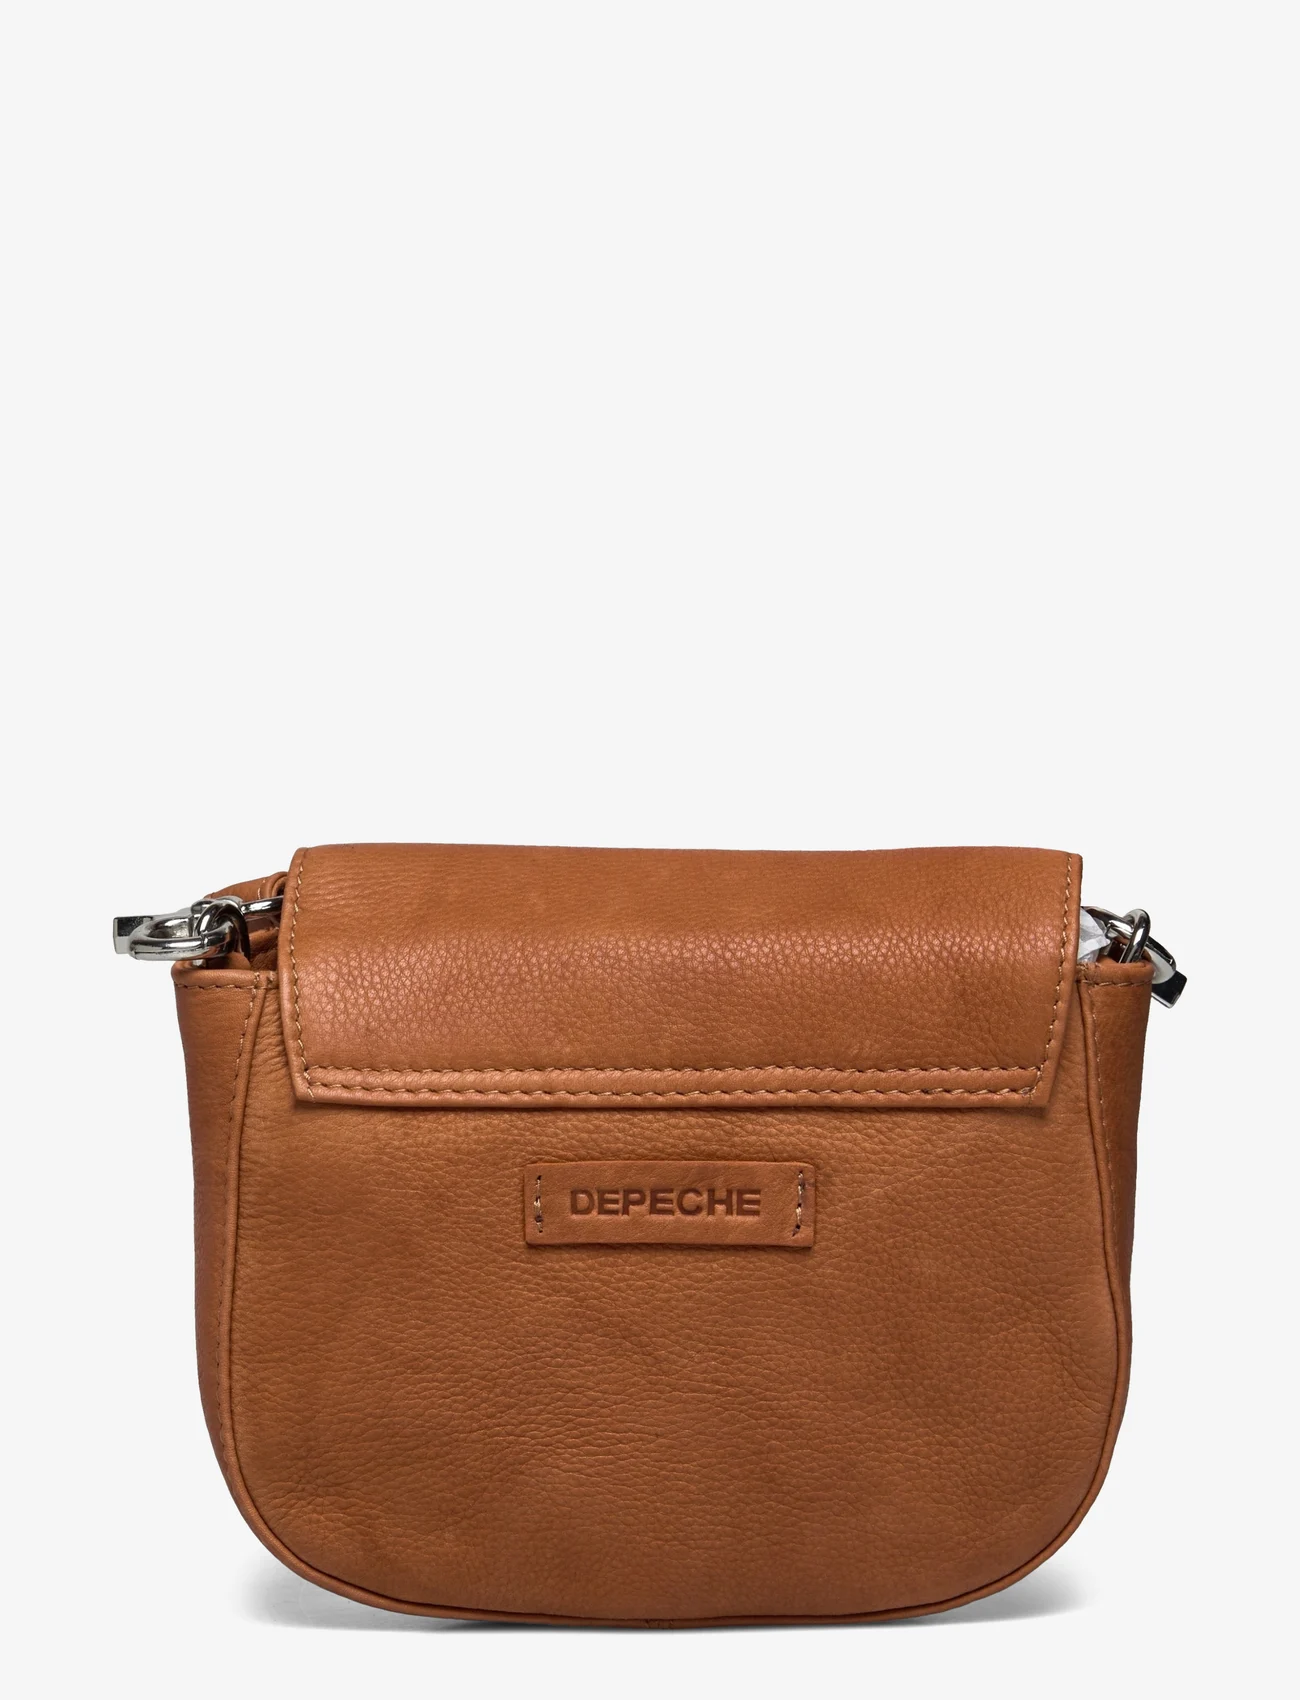 DEPECHE - Small bag / Clutch - odzież imprezowa w cenach outletowych - 014 cognac - 1